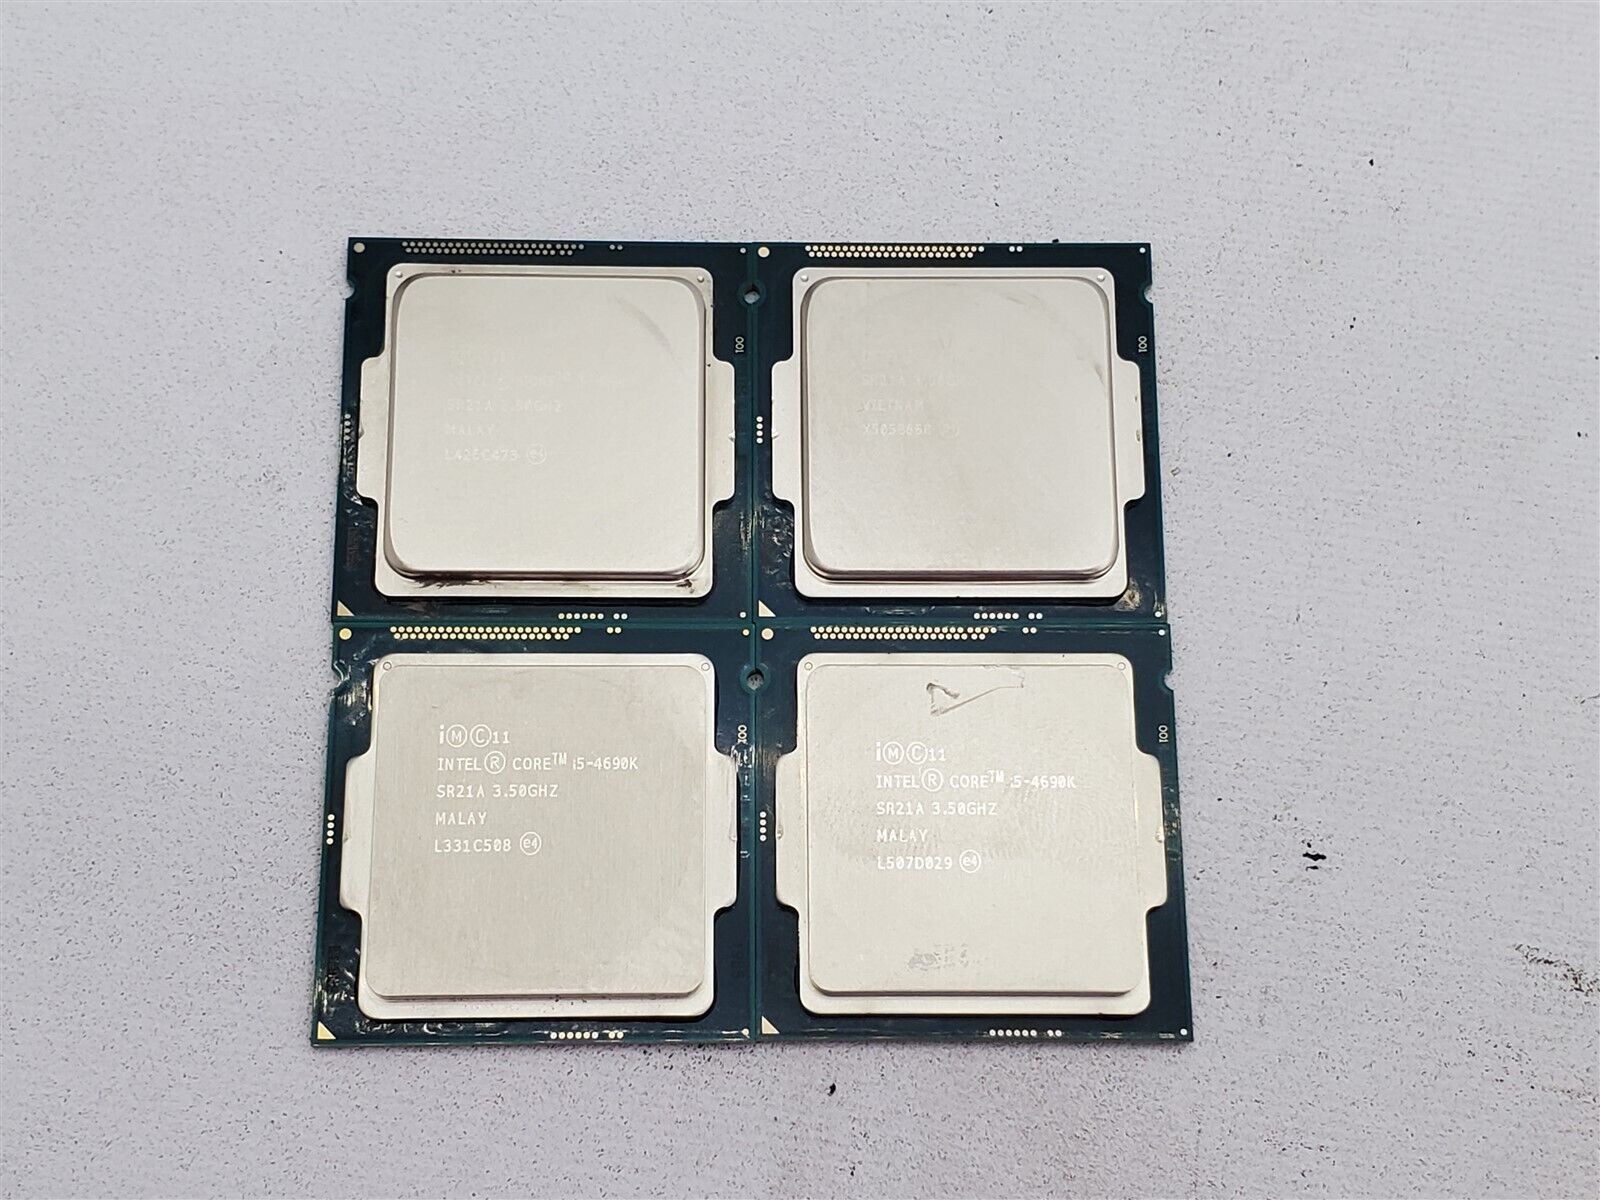 Lot of 4 Intel Core i5-4690K Quad-Core 3.5GHz 6MB LGA1150 CPU Processor SR21A